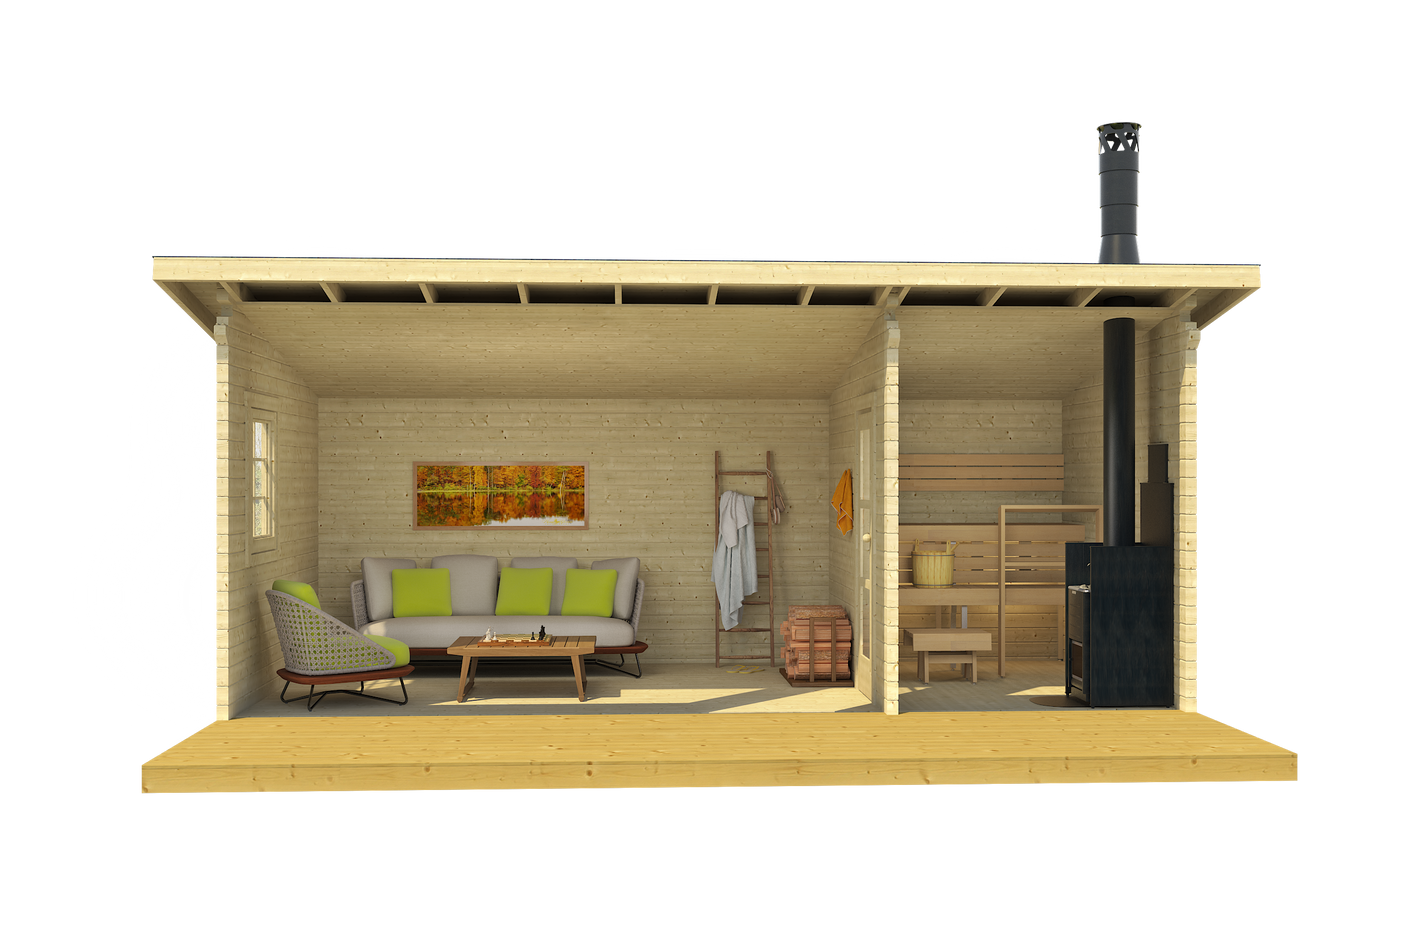 MODERNI PIHASAUNA 26 6.2x2.8m Sauna Log Cabin Front Internal